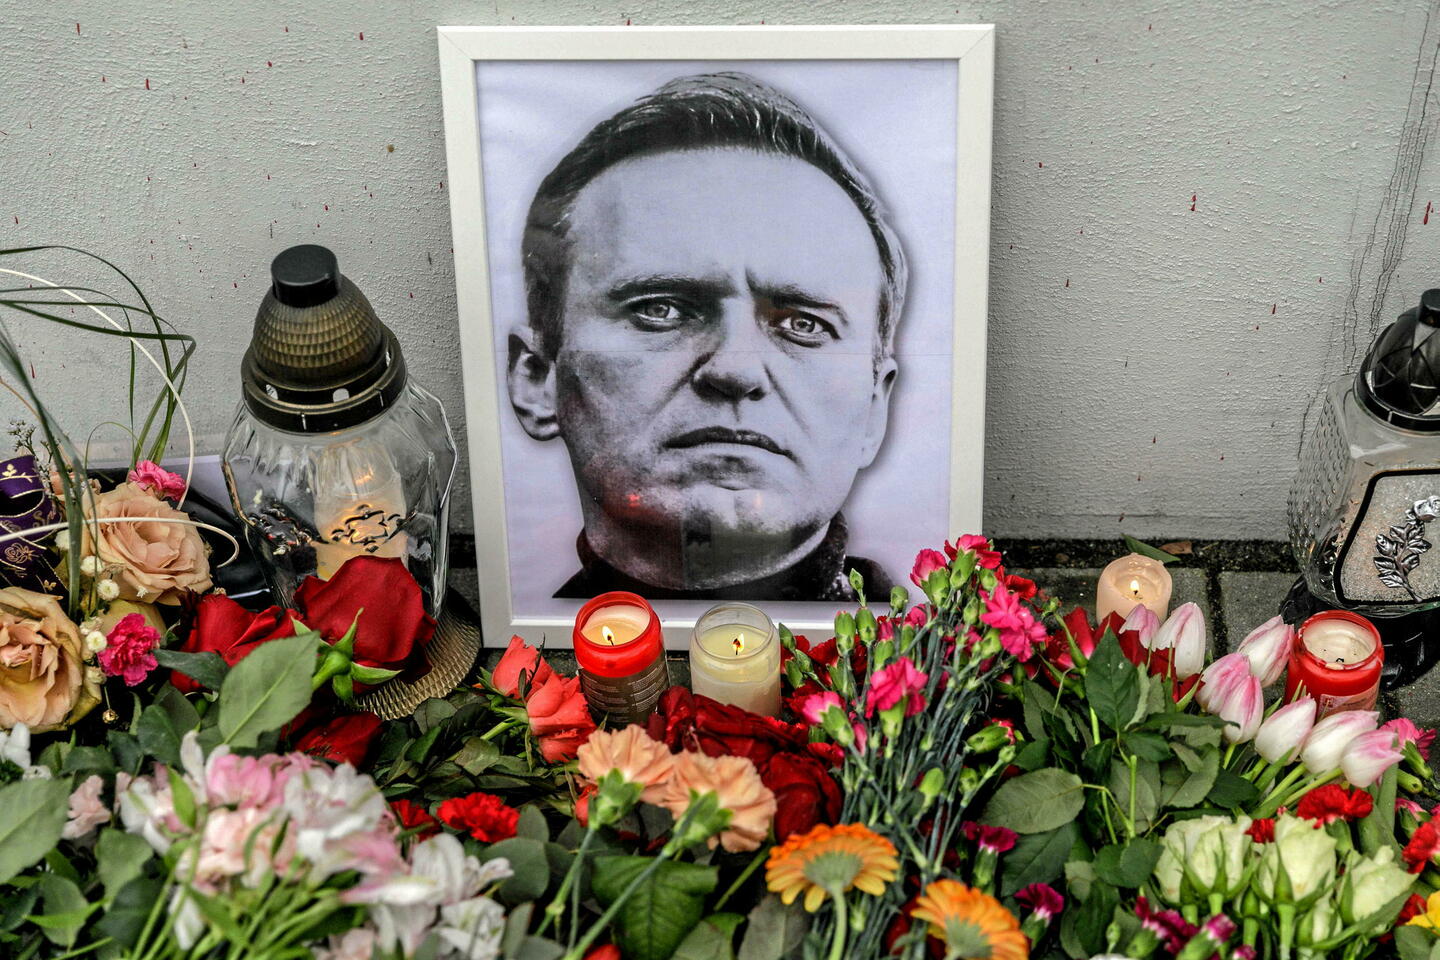 mort de navalny : un accord pour échanger l’opposant était « dans sa phase finale » avant sa mort